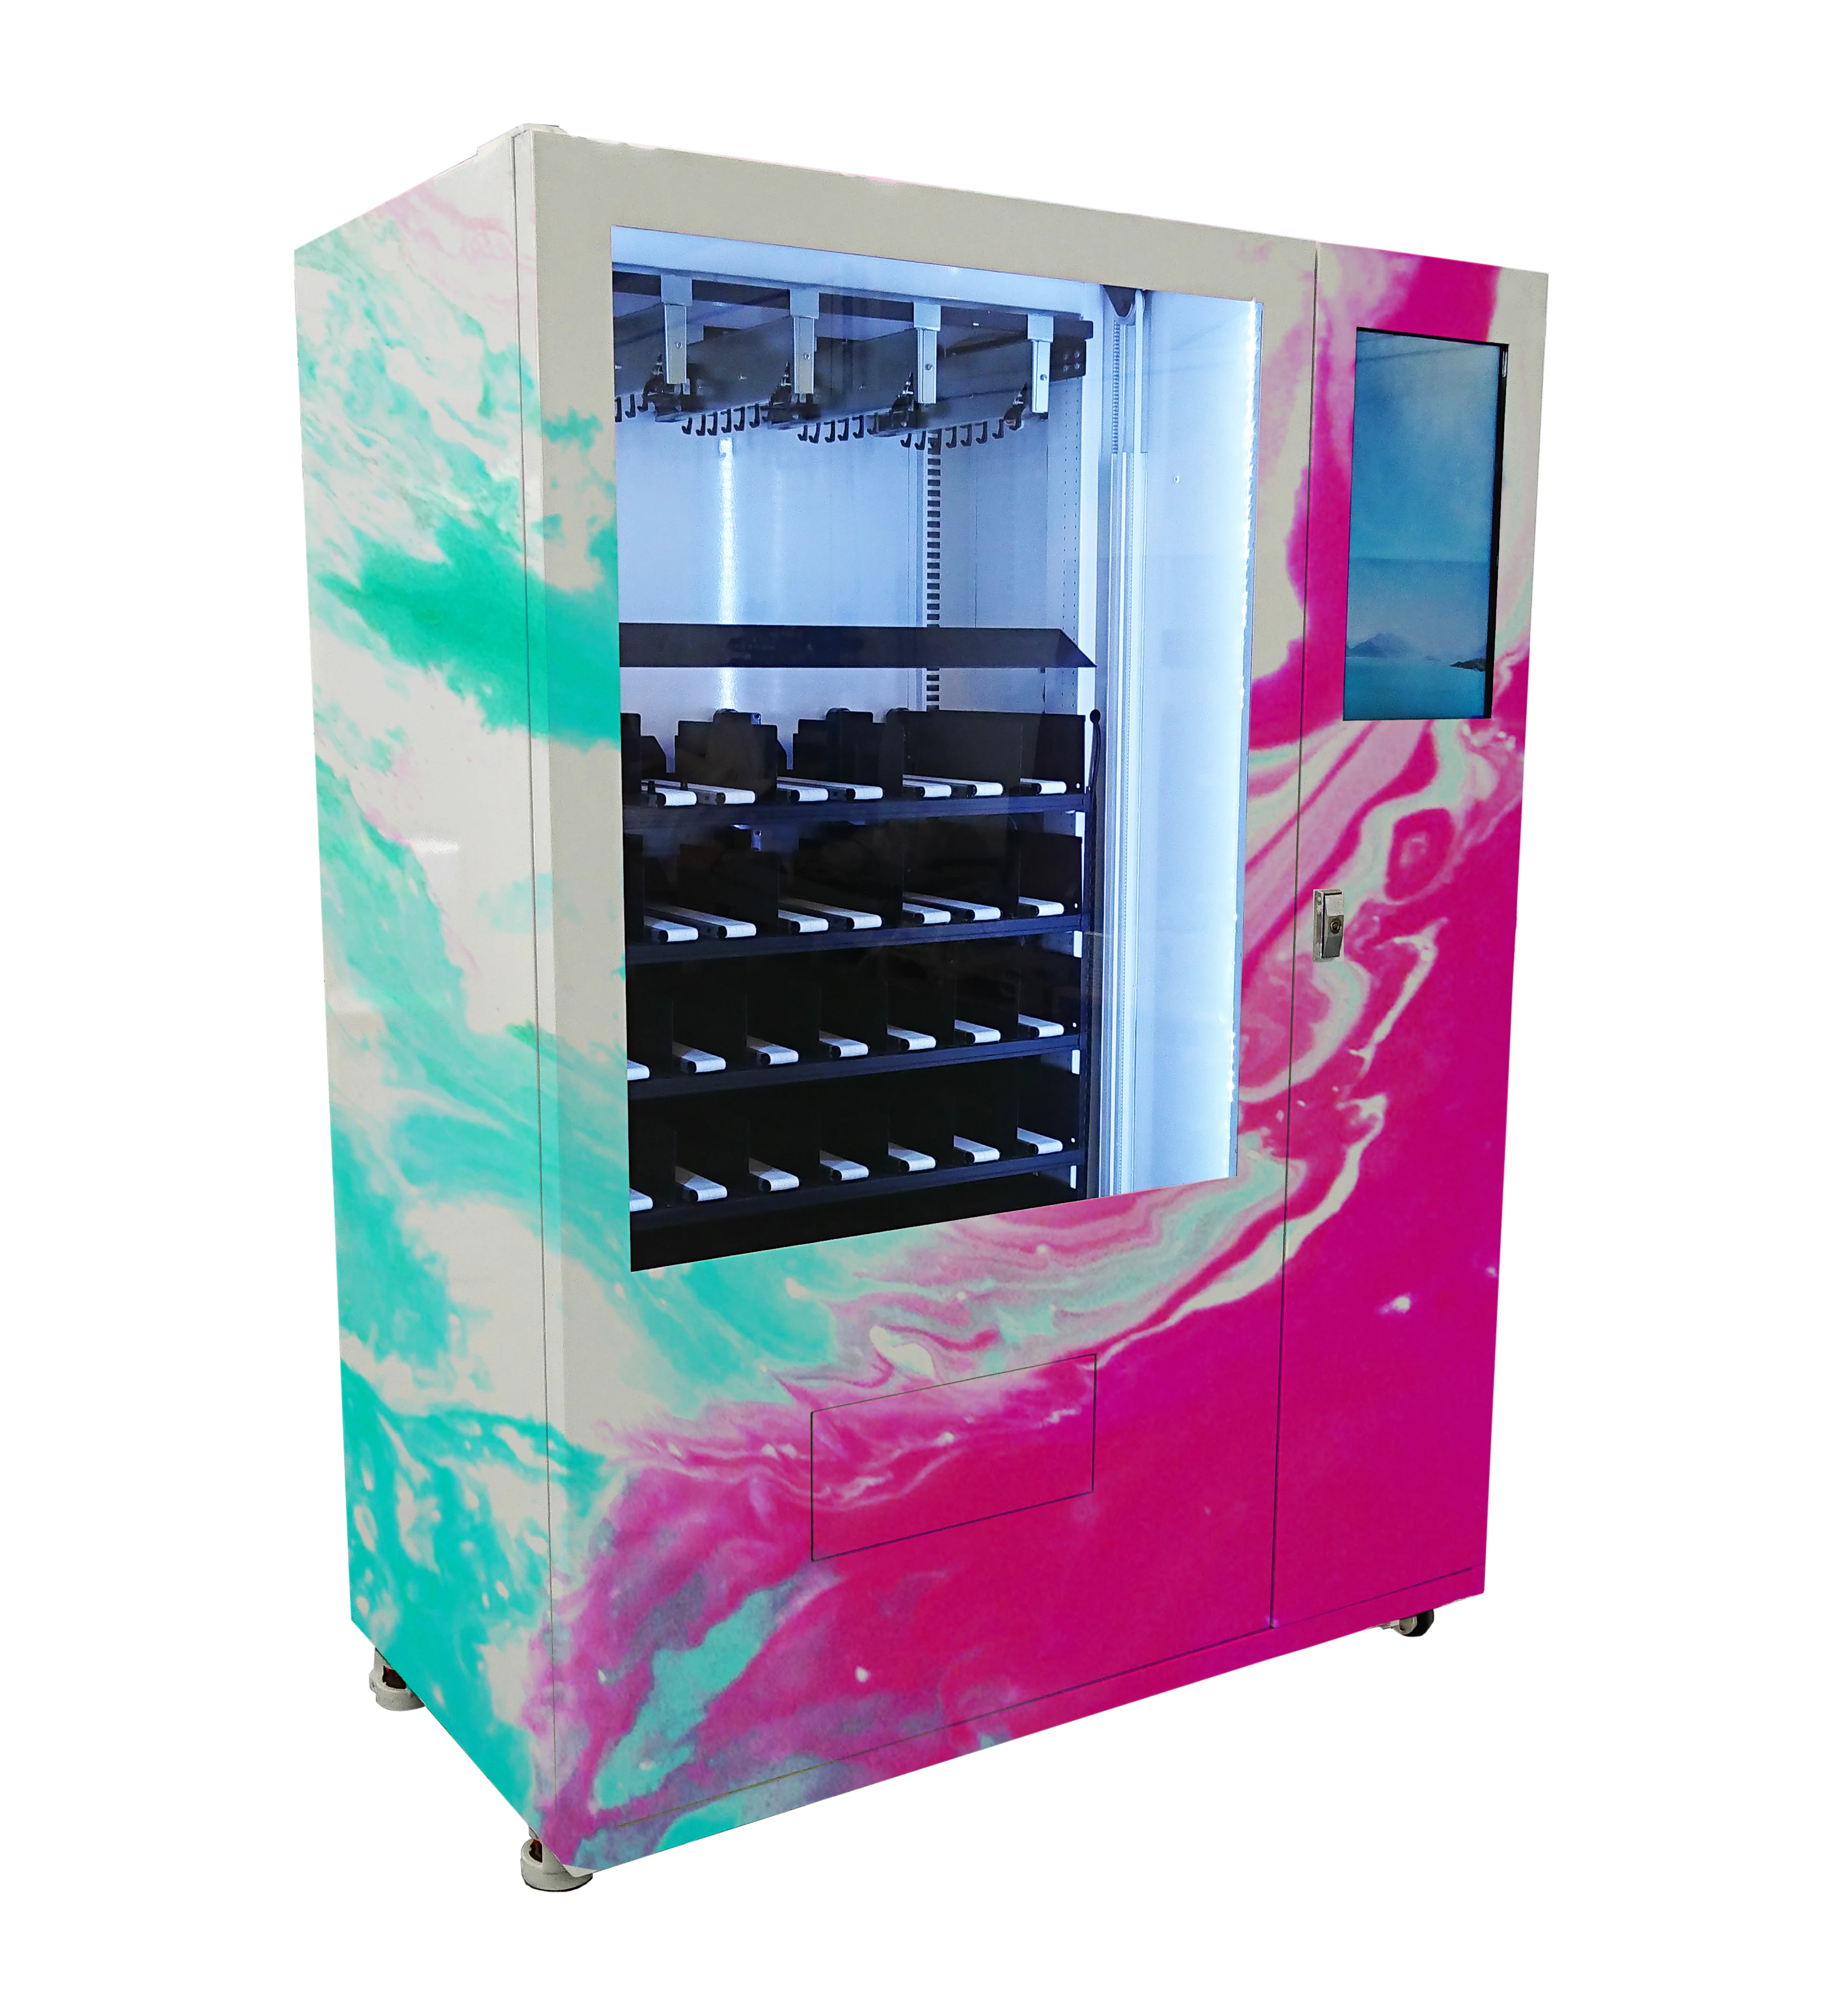 Роза Гвоздика Жасмин свежий цветок мини mart торговый автомат с дистанционным управлением большой сенсорный экран Показать